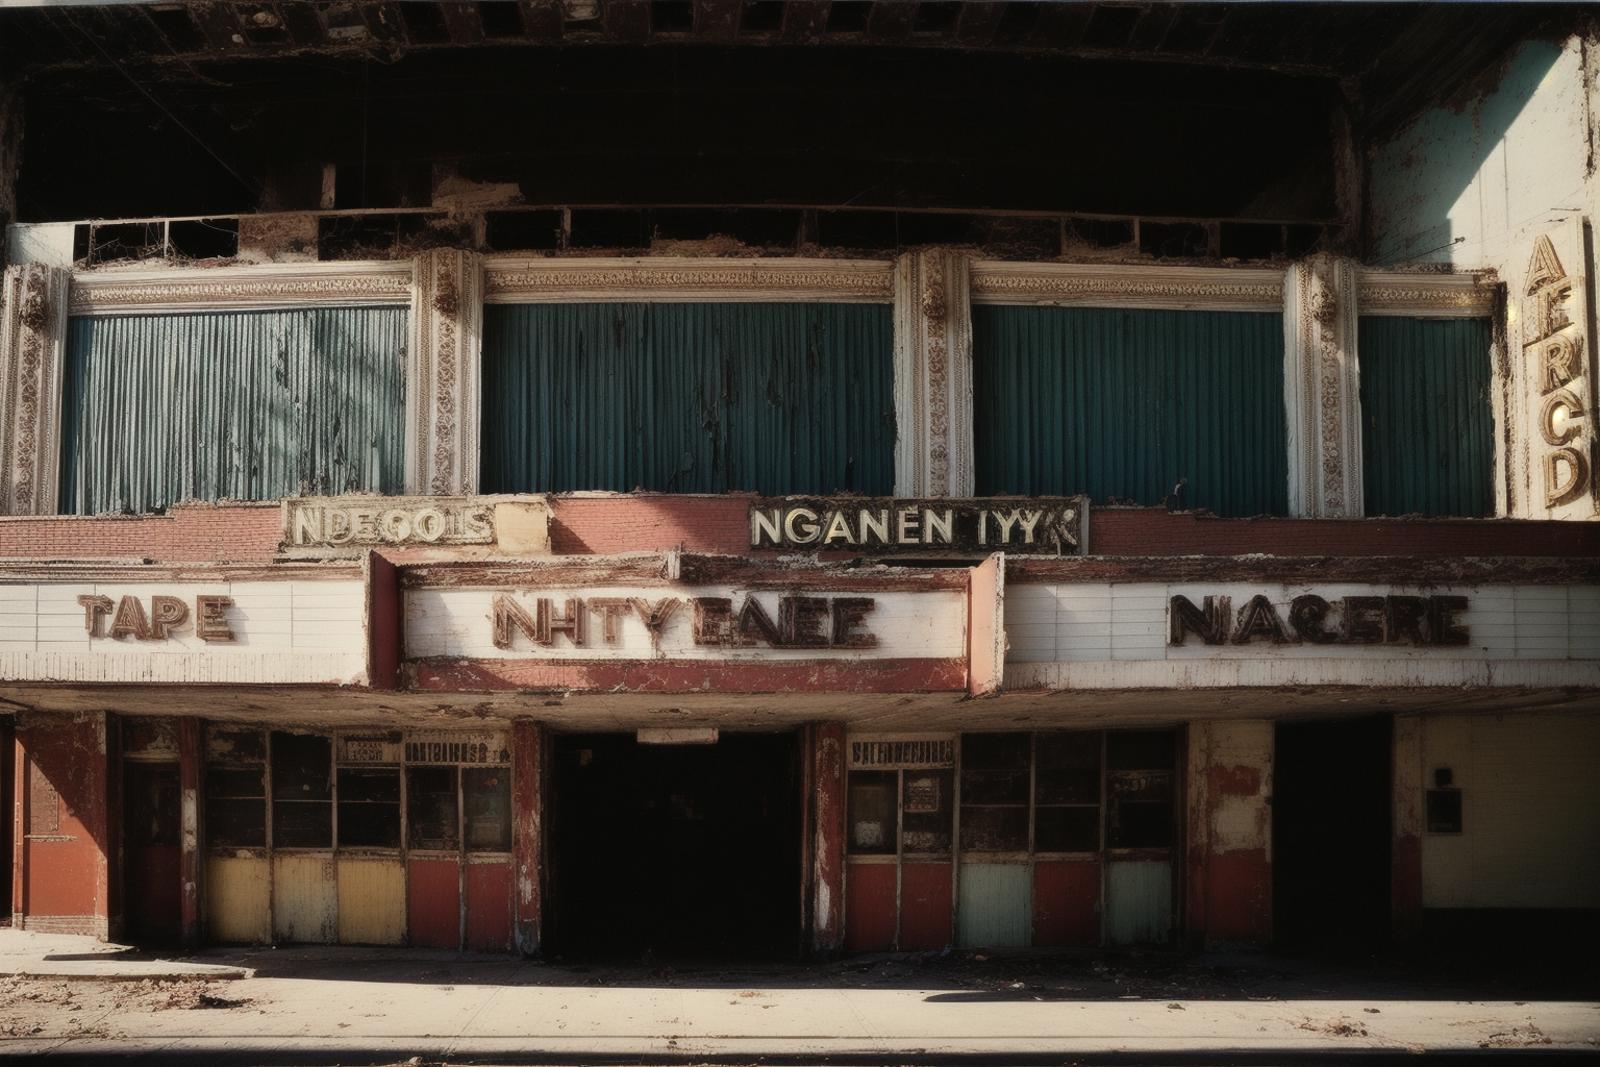 Abandoned Landscapes: New York City's Nineties nadir image by vlk